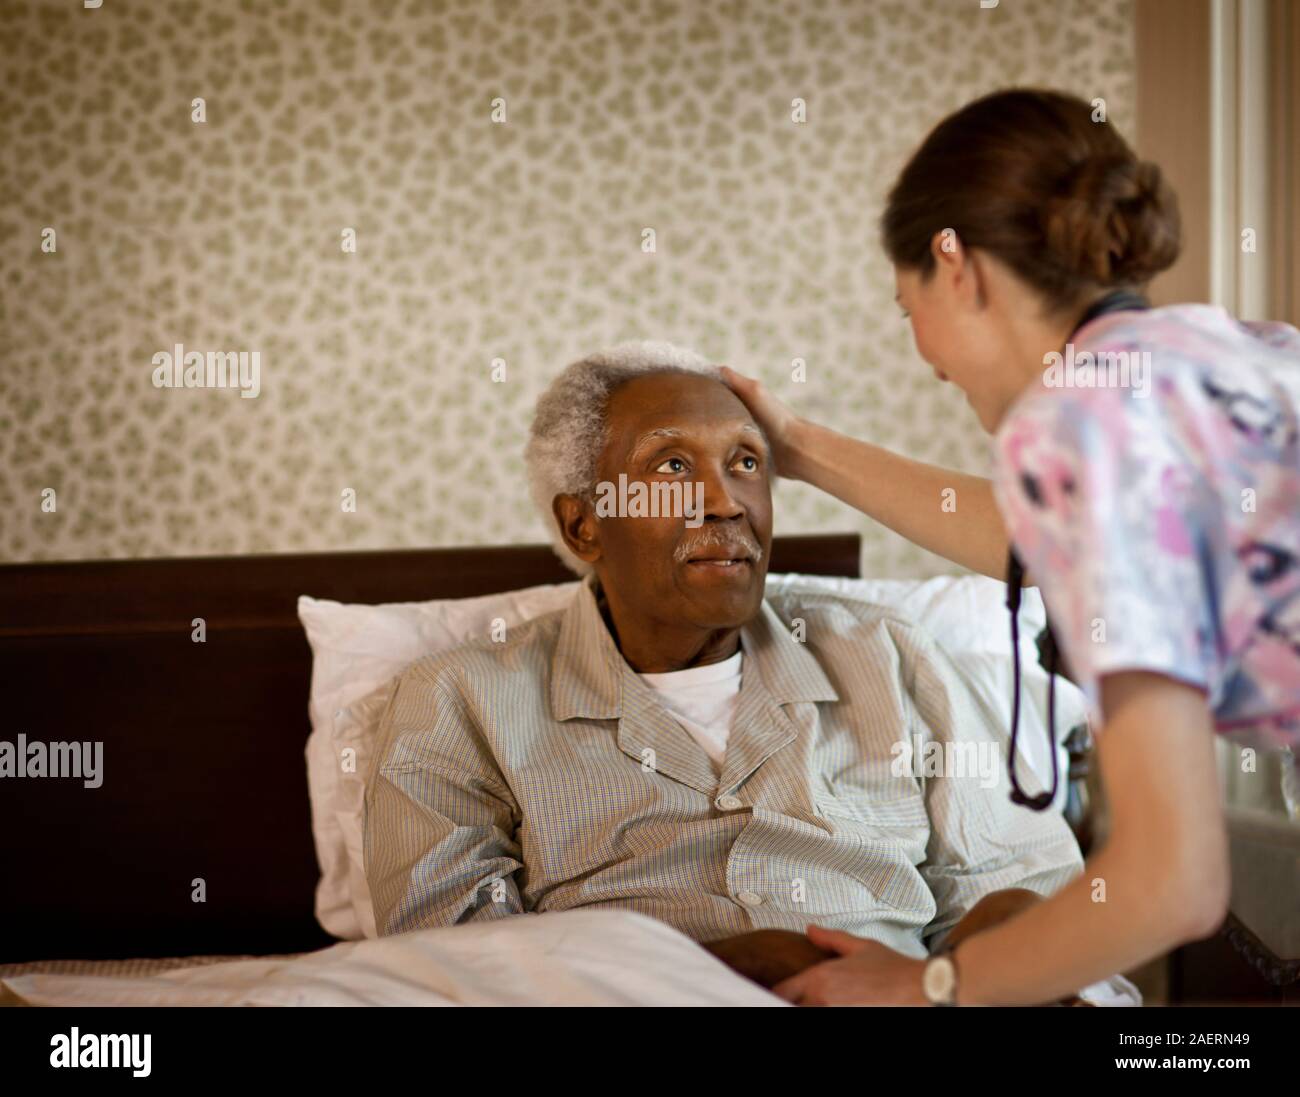 Junge Krankenschwester hält die Hand und berührt den Kopf ihres älteren männlichen Patienten. Stockfoto